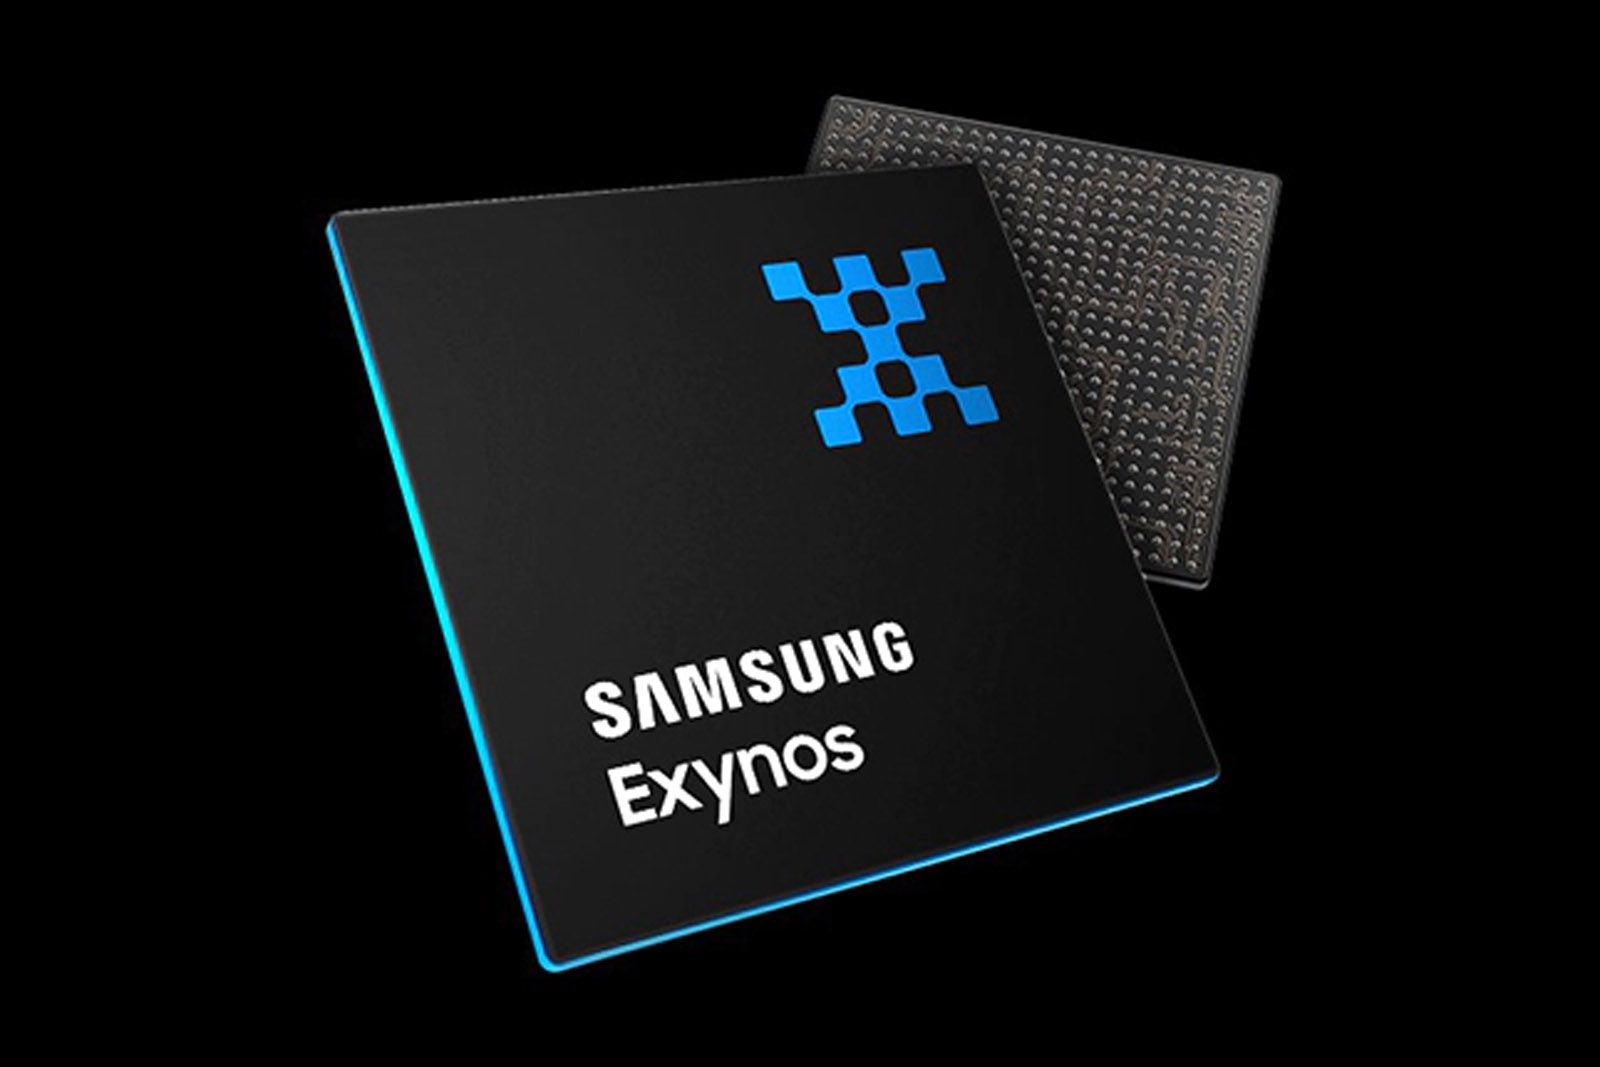 Samsung Exynos chip representation